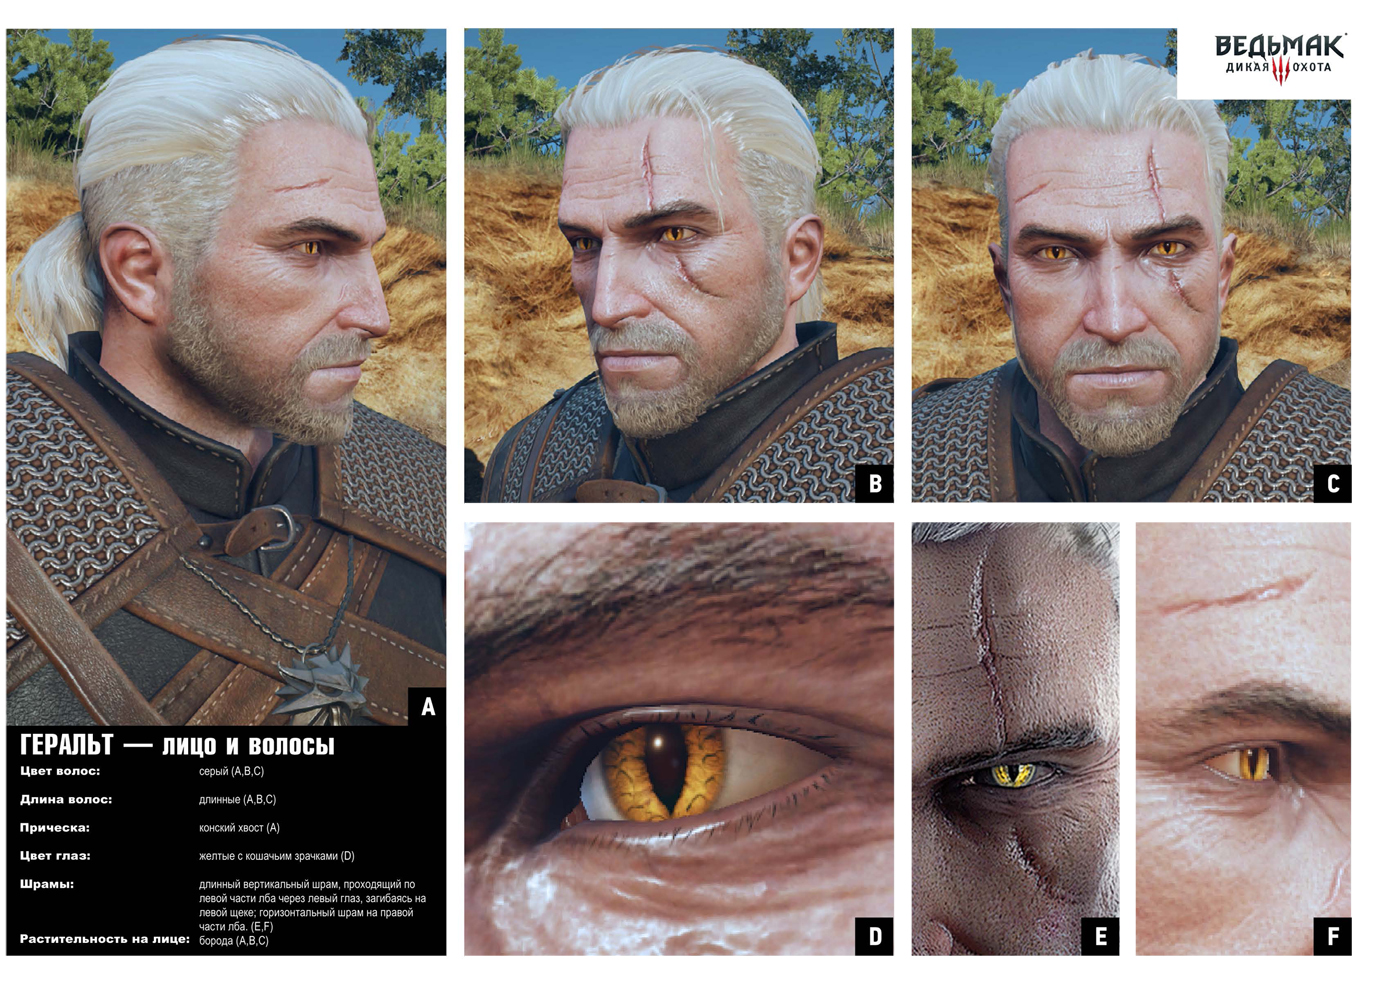 Geralt-rukovodstvo-po-kospleyu-3.jpg